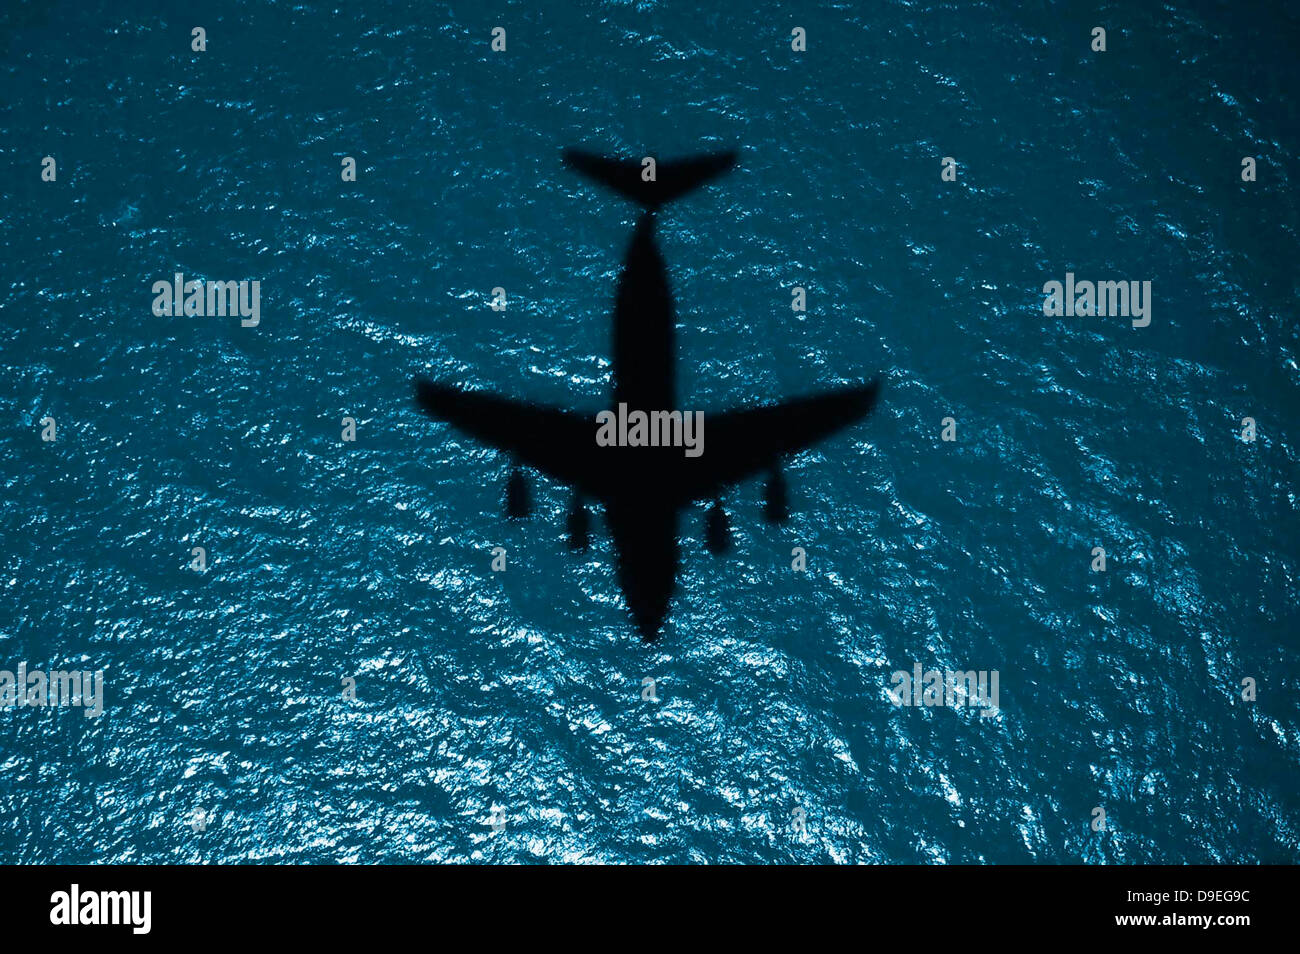 4 luglio 2010 - la silhouette di un aereo militare in volo sopra l'Oceano Atlantico. Foto Stock